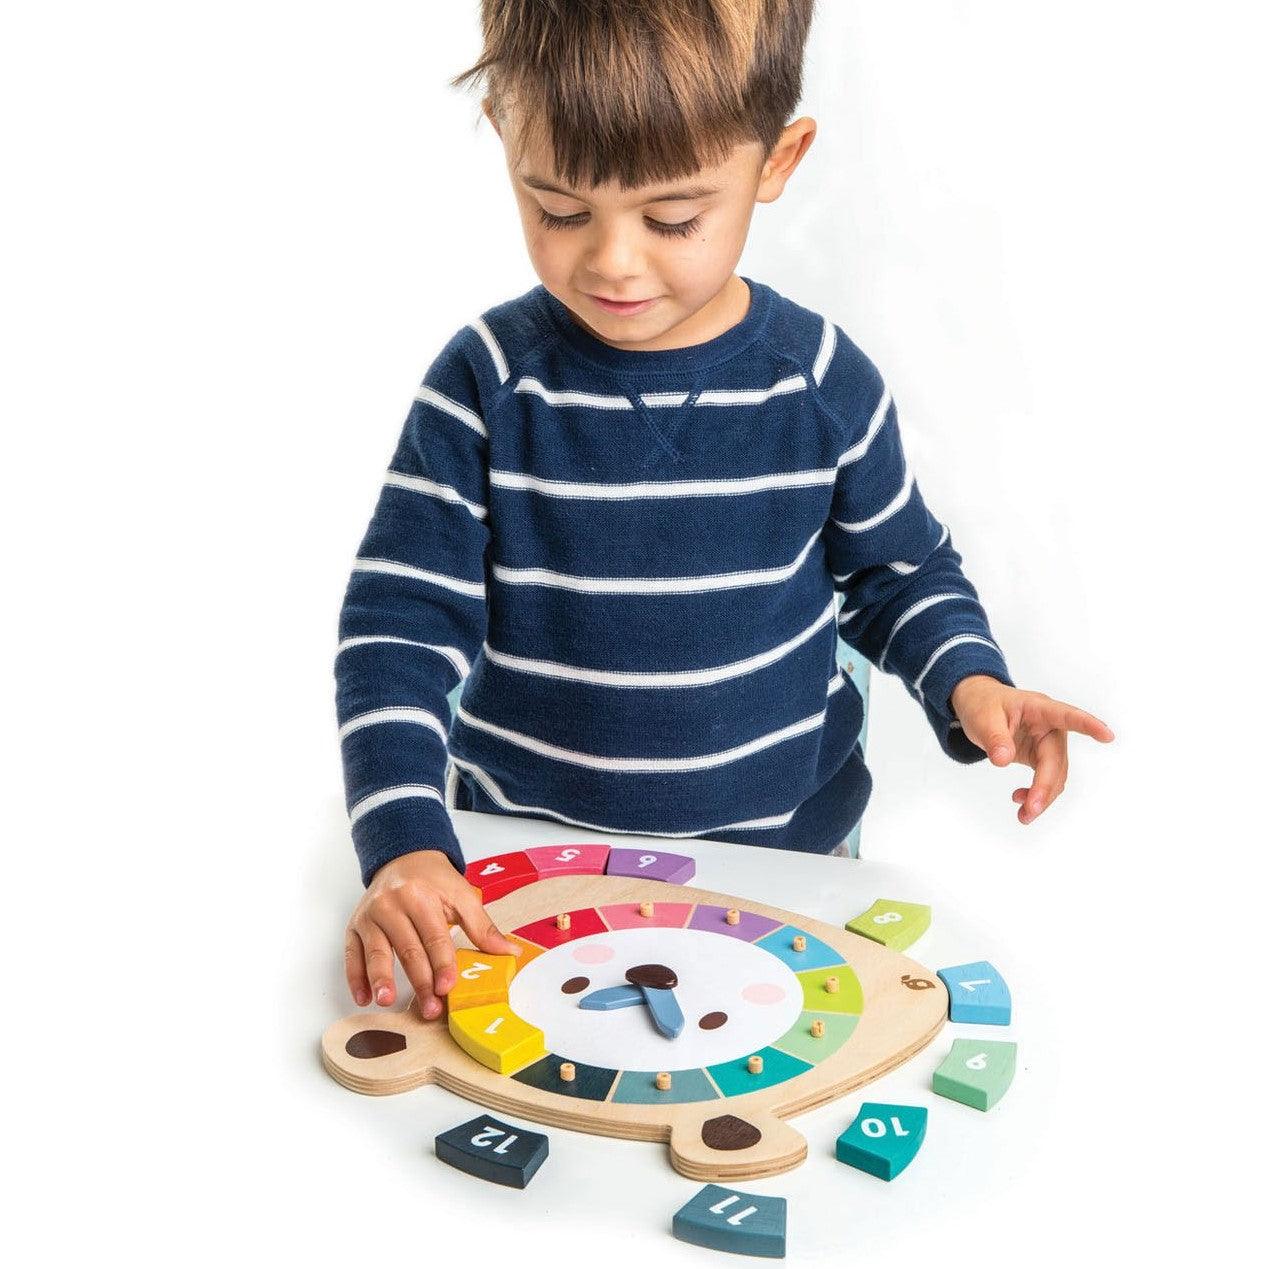 Tender Leaf Toys: edukacyjny zegar Bear Colors Clock - Noski Noski